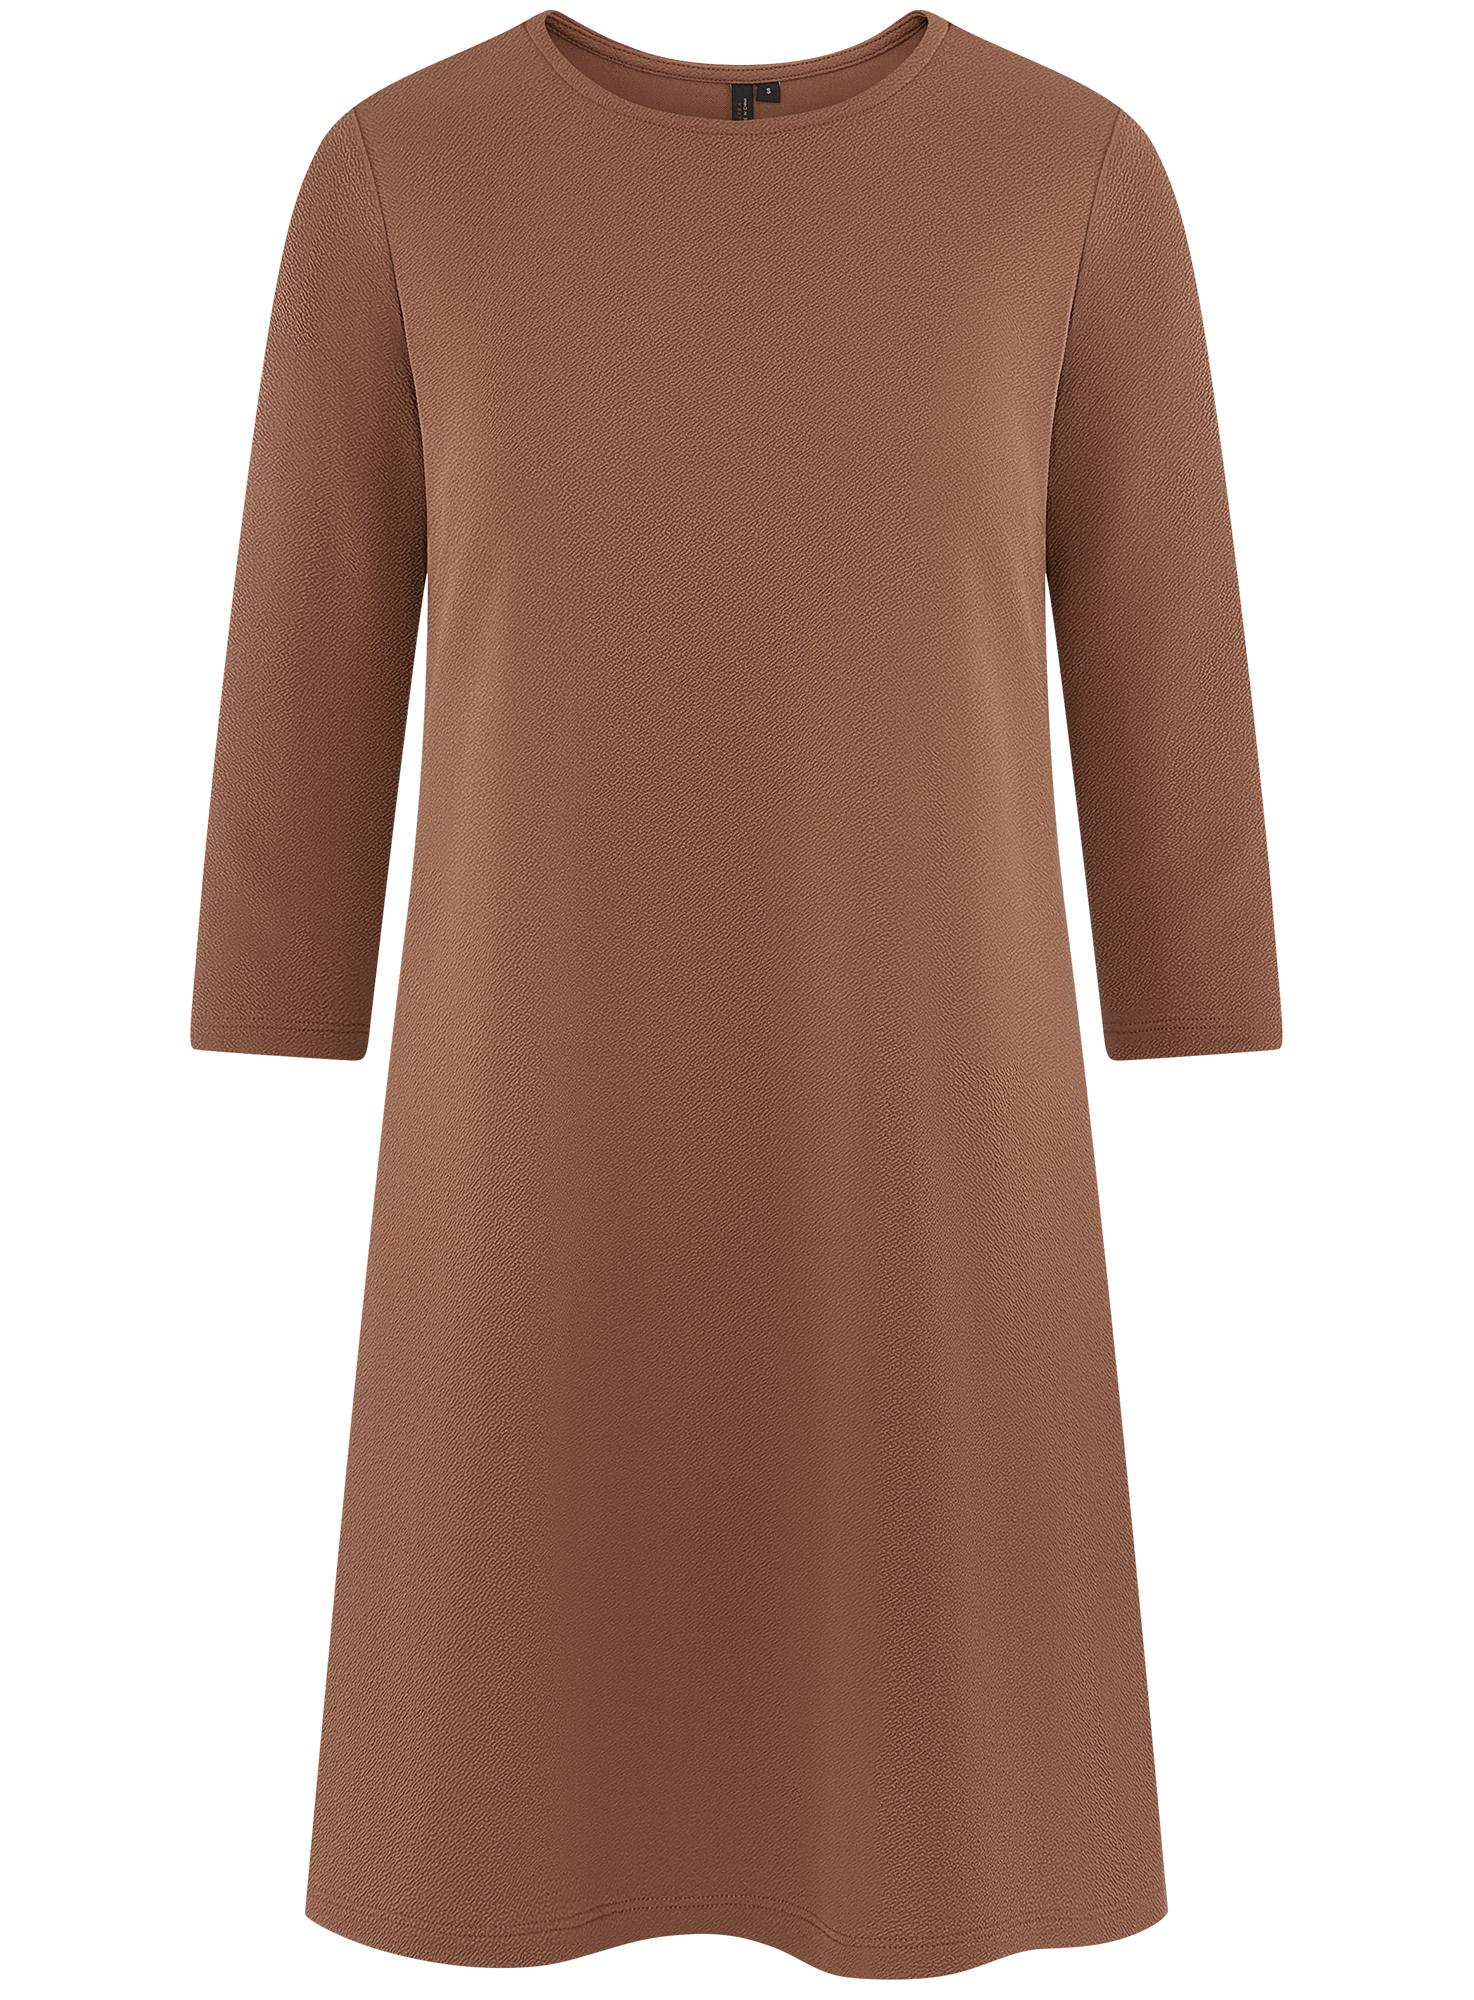 Платье женское oodji 14001253 коричневое XS